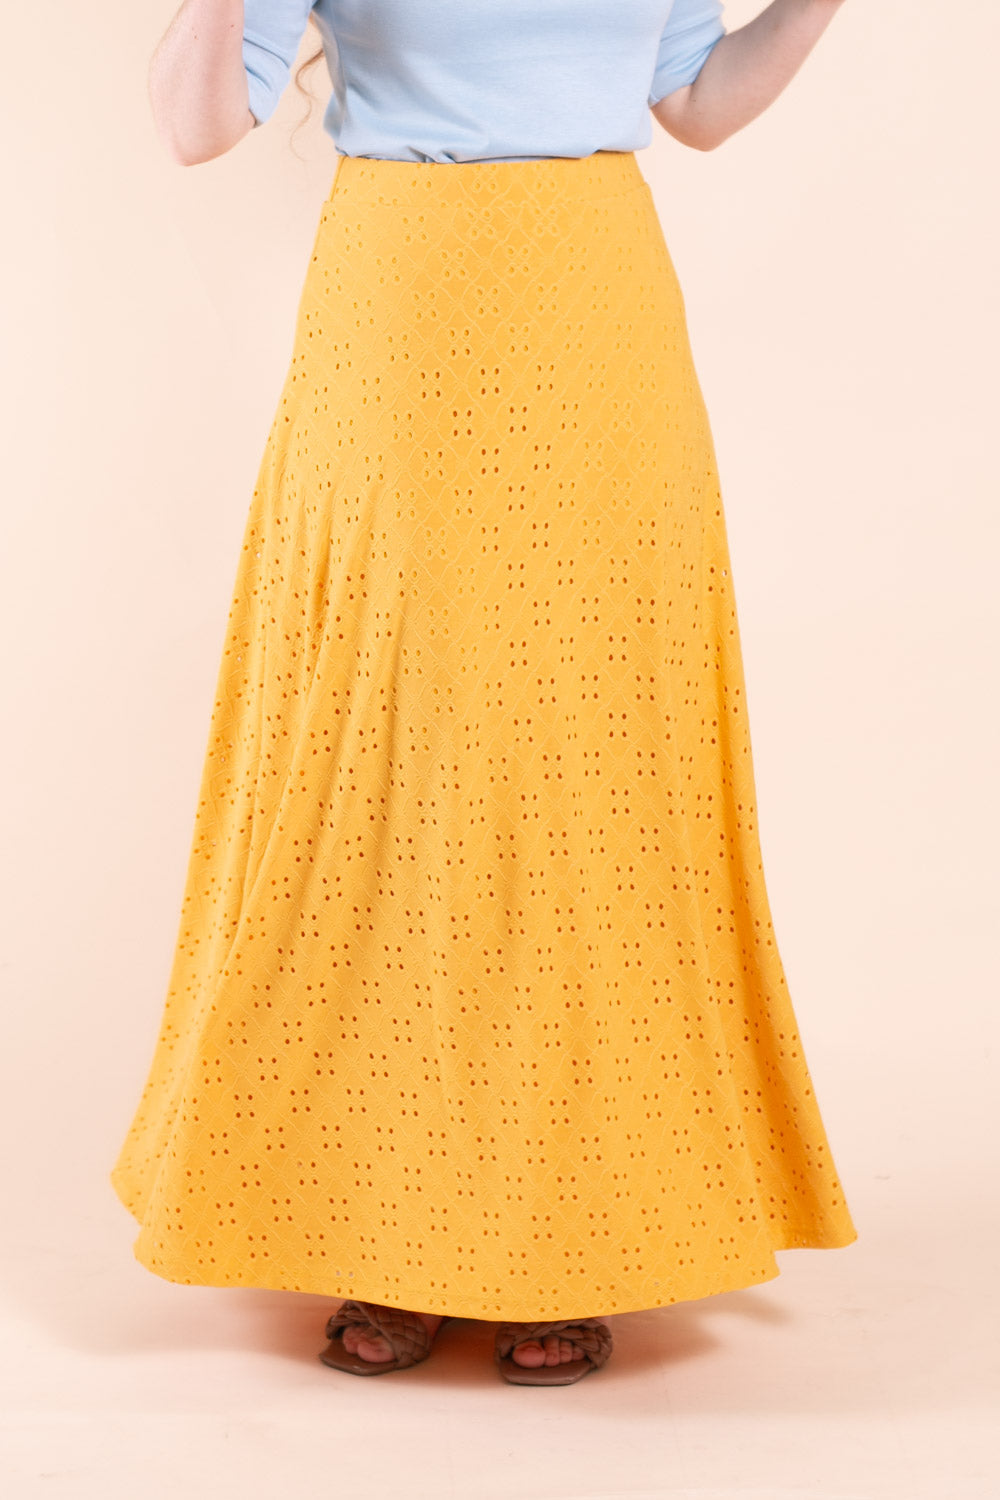 Annabeth Maxi Skirt in Mustard Eyelet